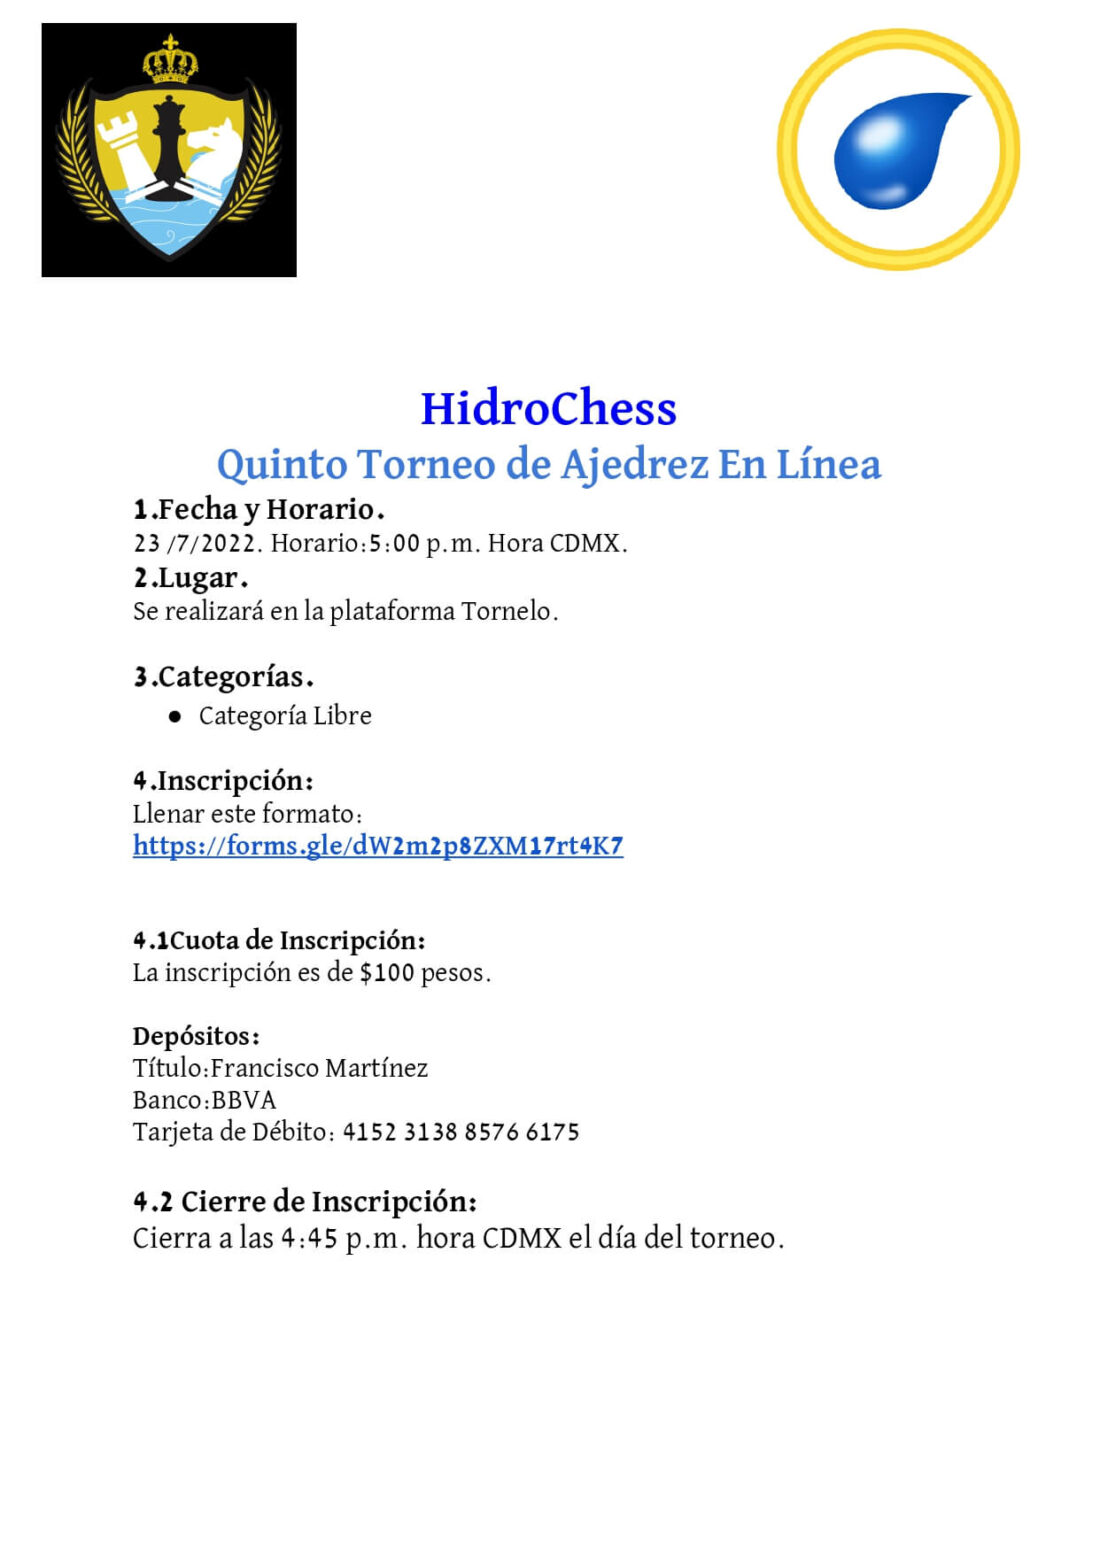 Convocatorio de  HidroChess Quinto Torneo de Ajedrez en Línea